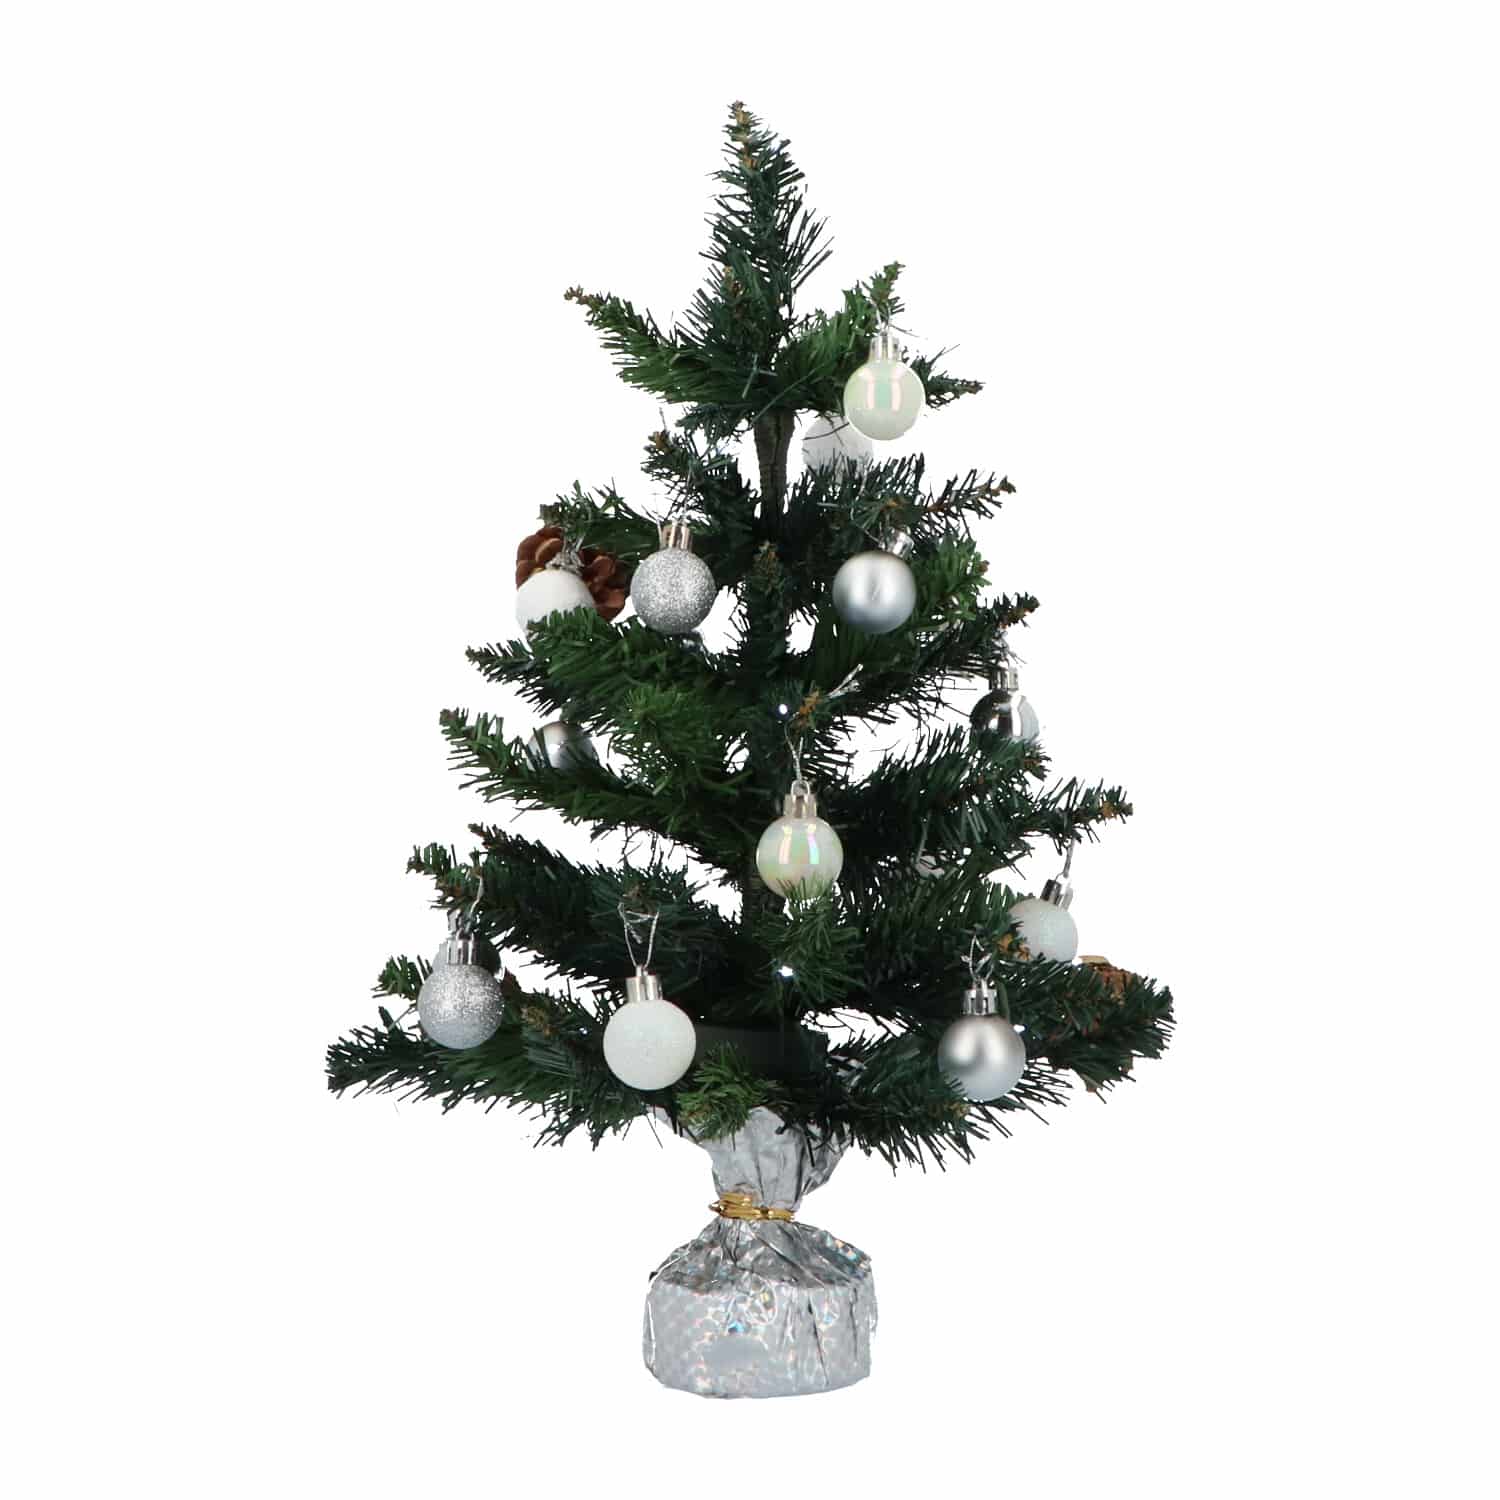 4goodz kunstkerstboom met licht en versiering 50cm hoog - Zilver/Wit